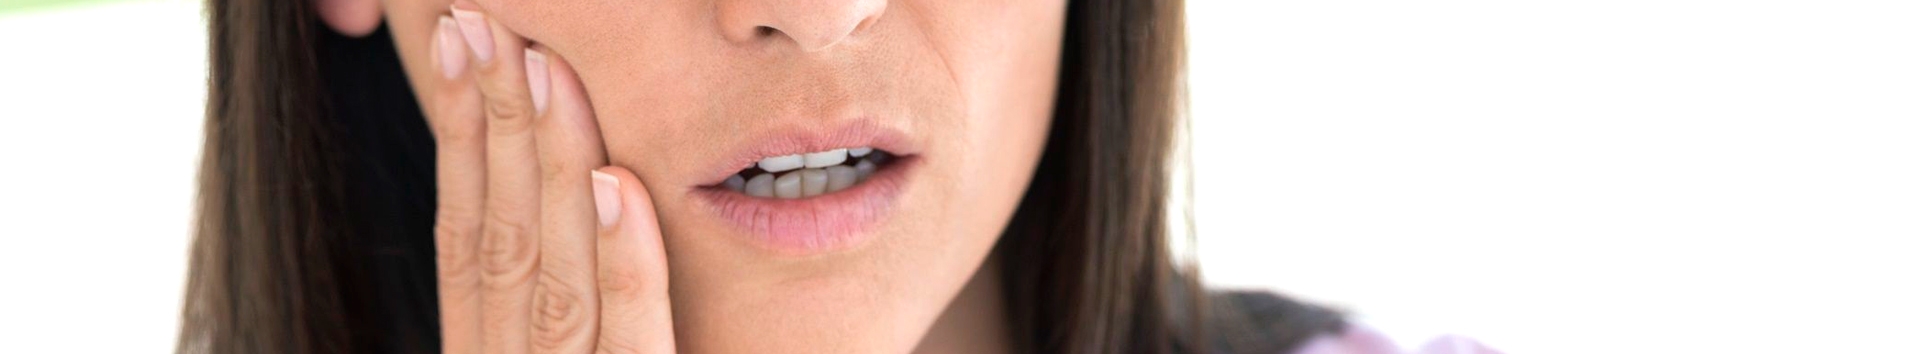 Remédios caseiros para aliviar dor de dente que você deve fugir